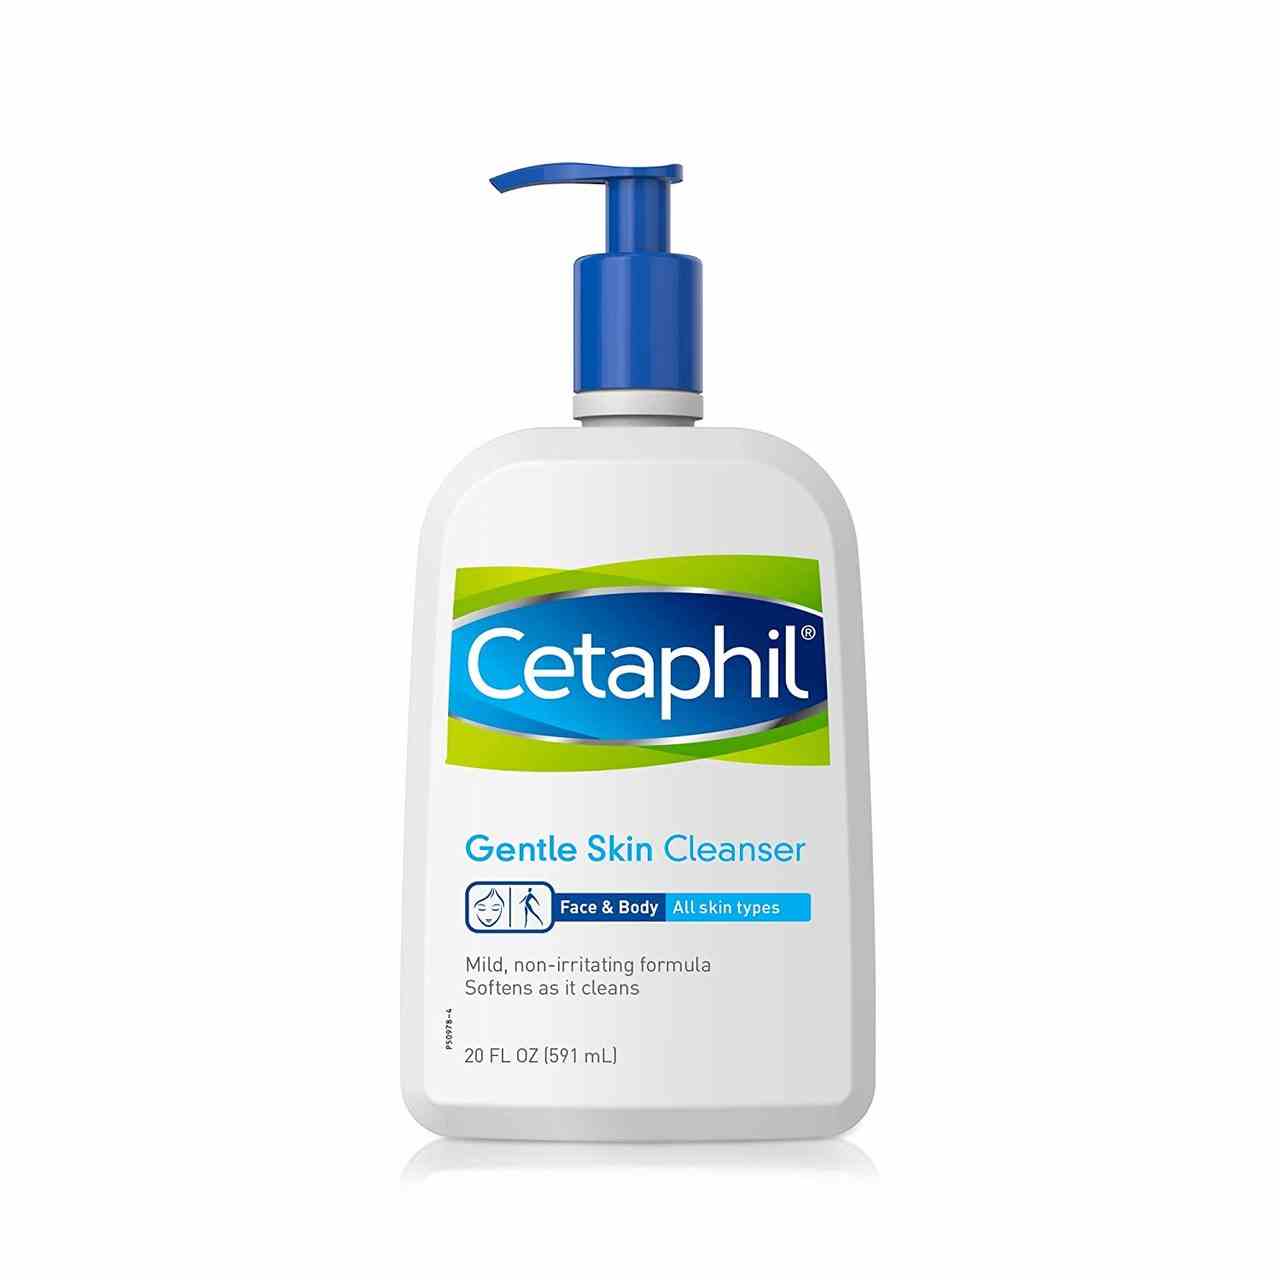 Eine blau-weiße Pumpflasche des Cetaphil Gentle Skin Cleanser auf weißem Hintergrund.